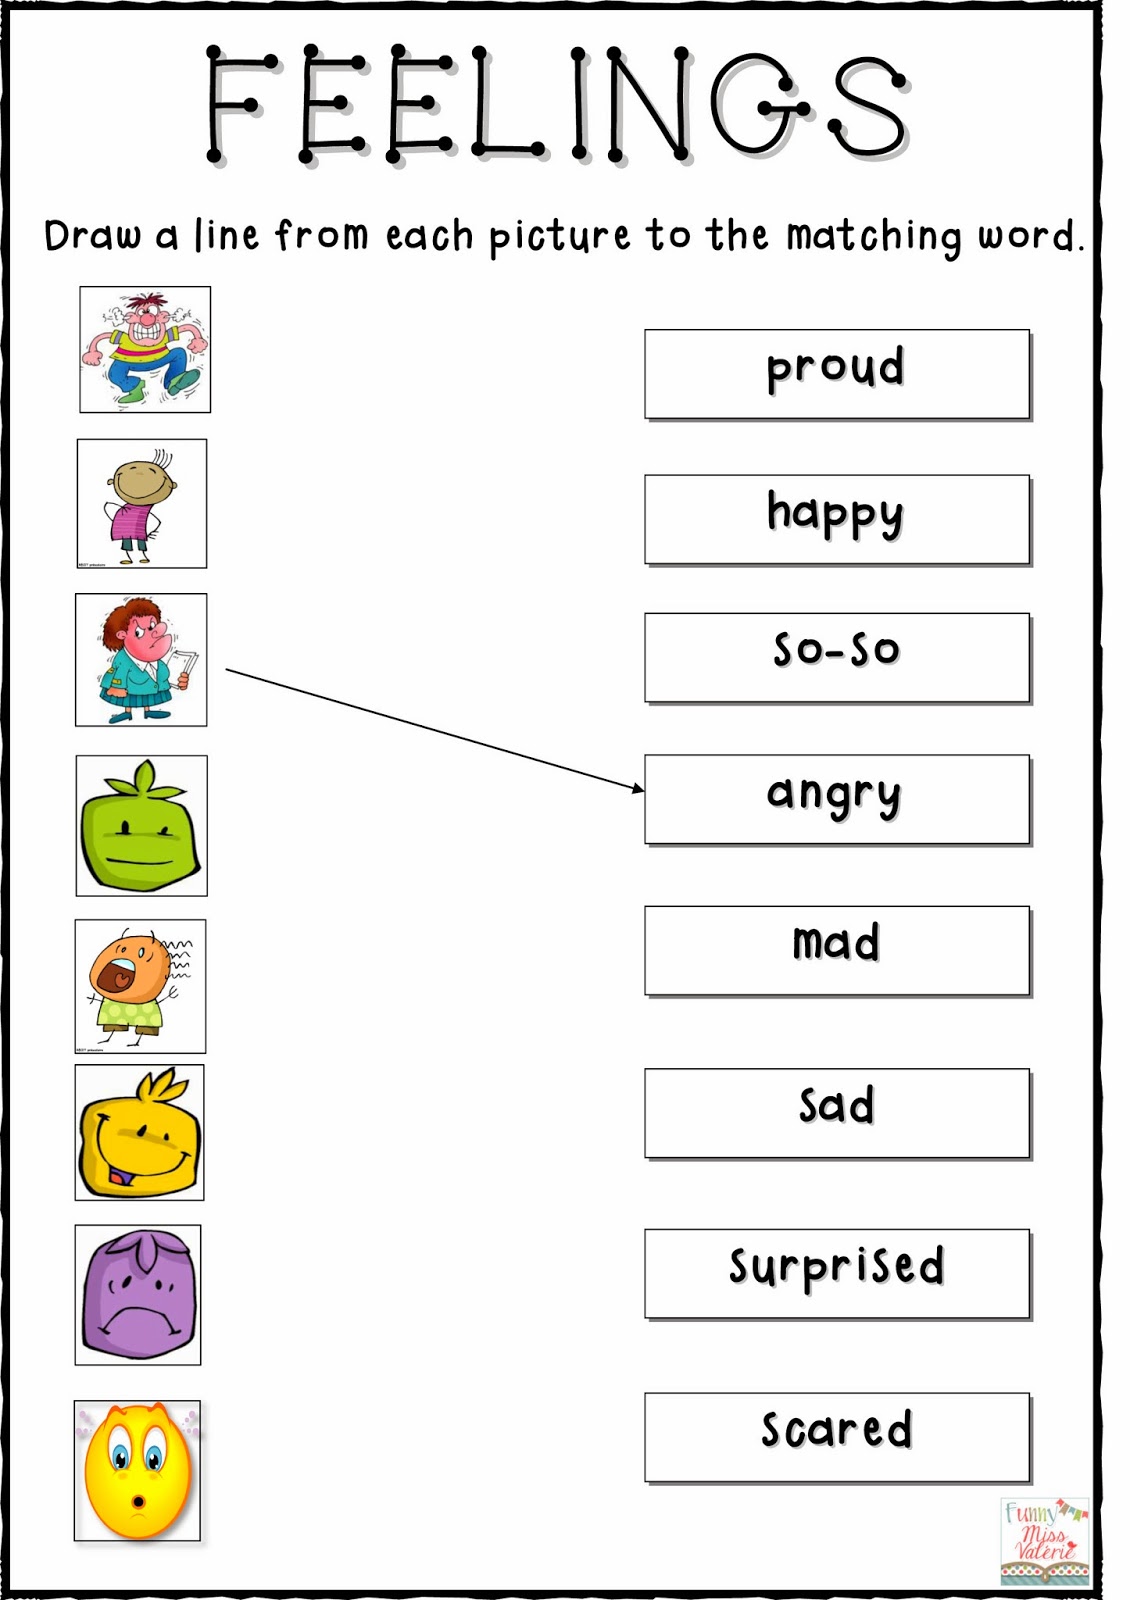 Feelings Worksheets For Kids Worksheets For All